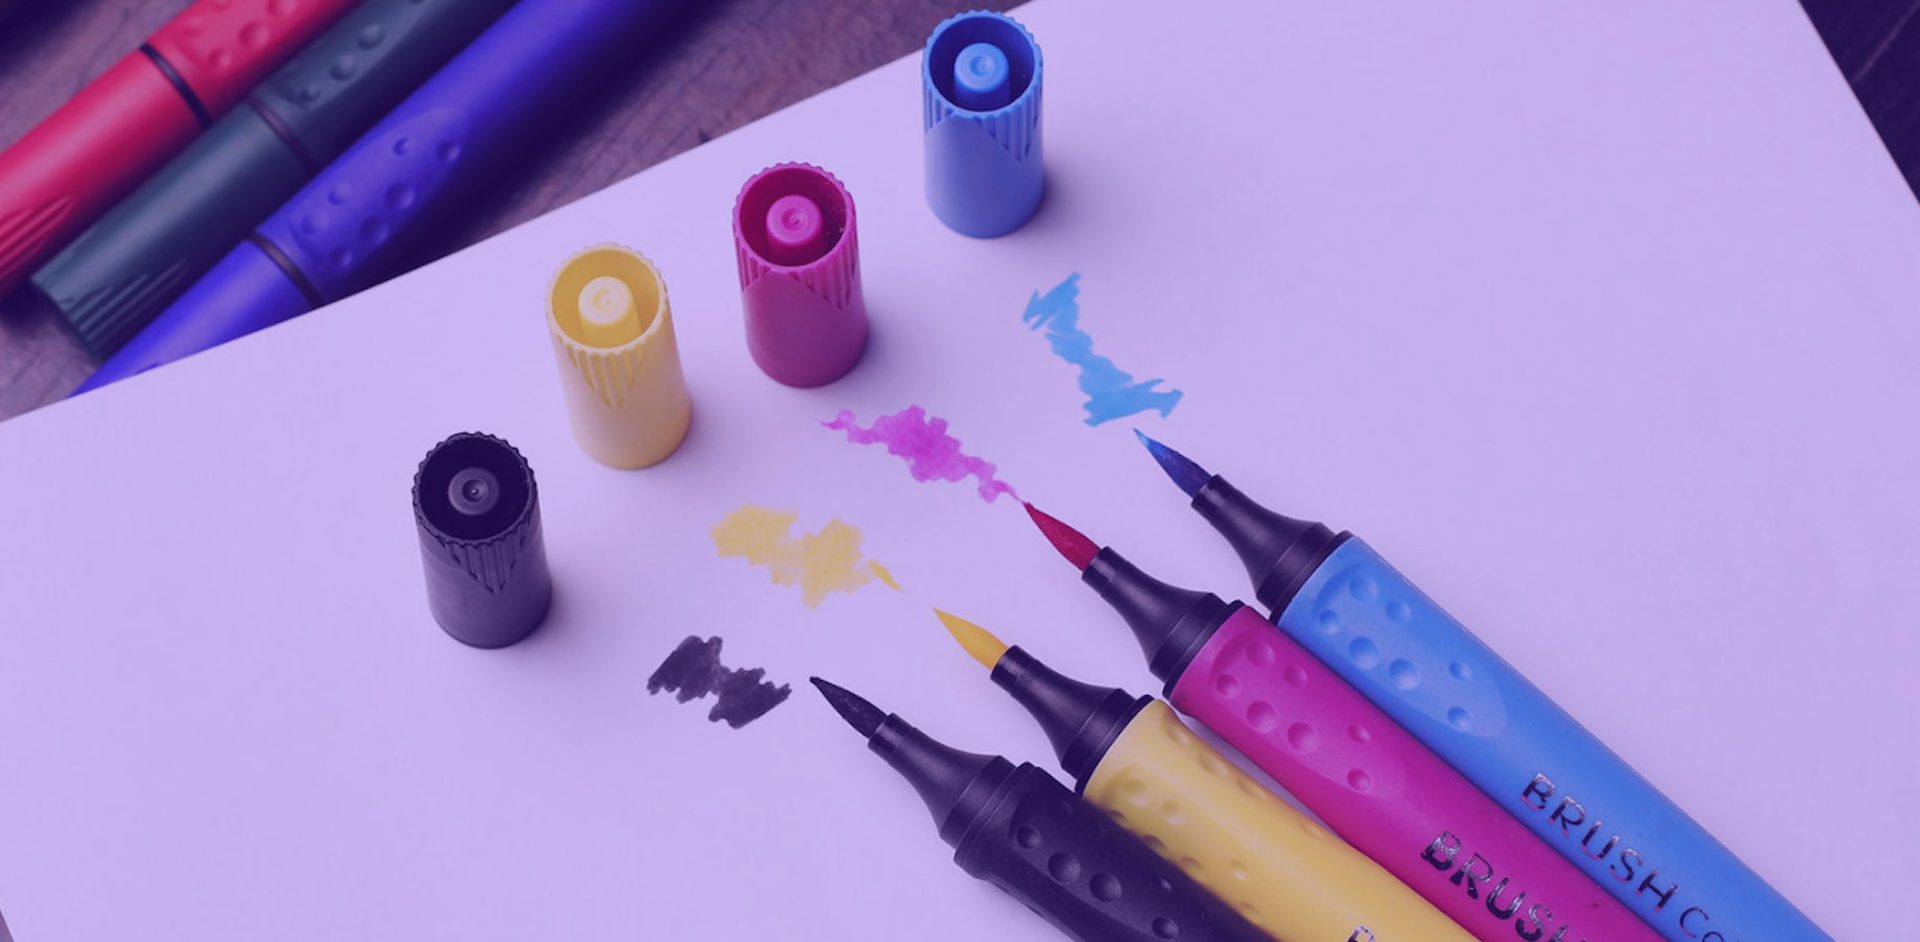 ¿Cómo dibujar con marcadores? Aprende todo sobre estas herramientas